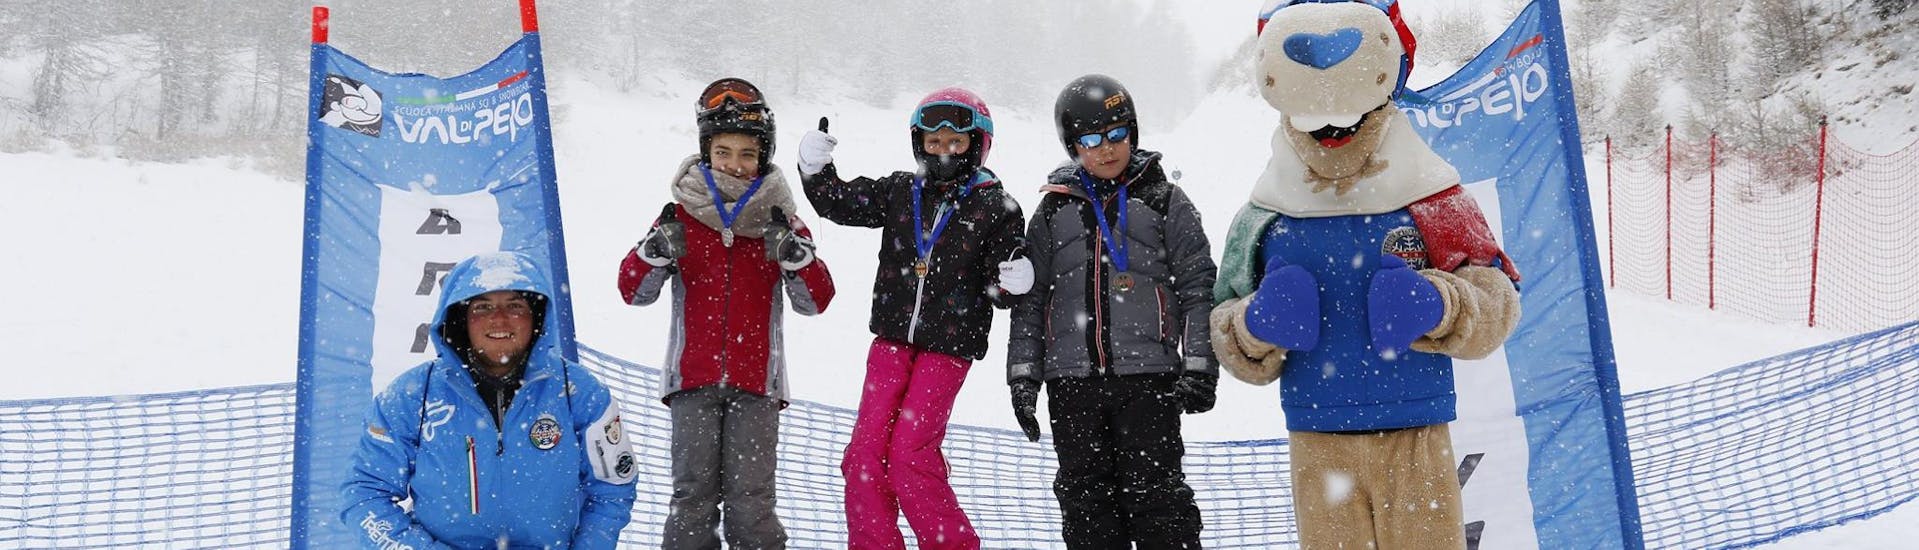 Premiazione finale delle Lezioni di sci intensive per bambini di livello avanzato (dai 7 ai 17 anni) con Scuola Sci e Snowboard Val di Pejo.